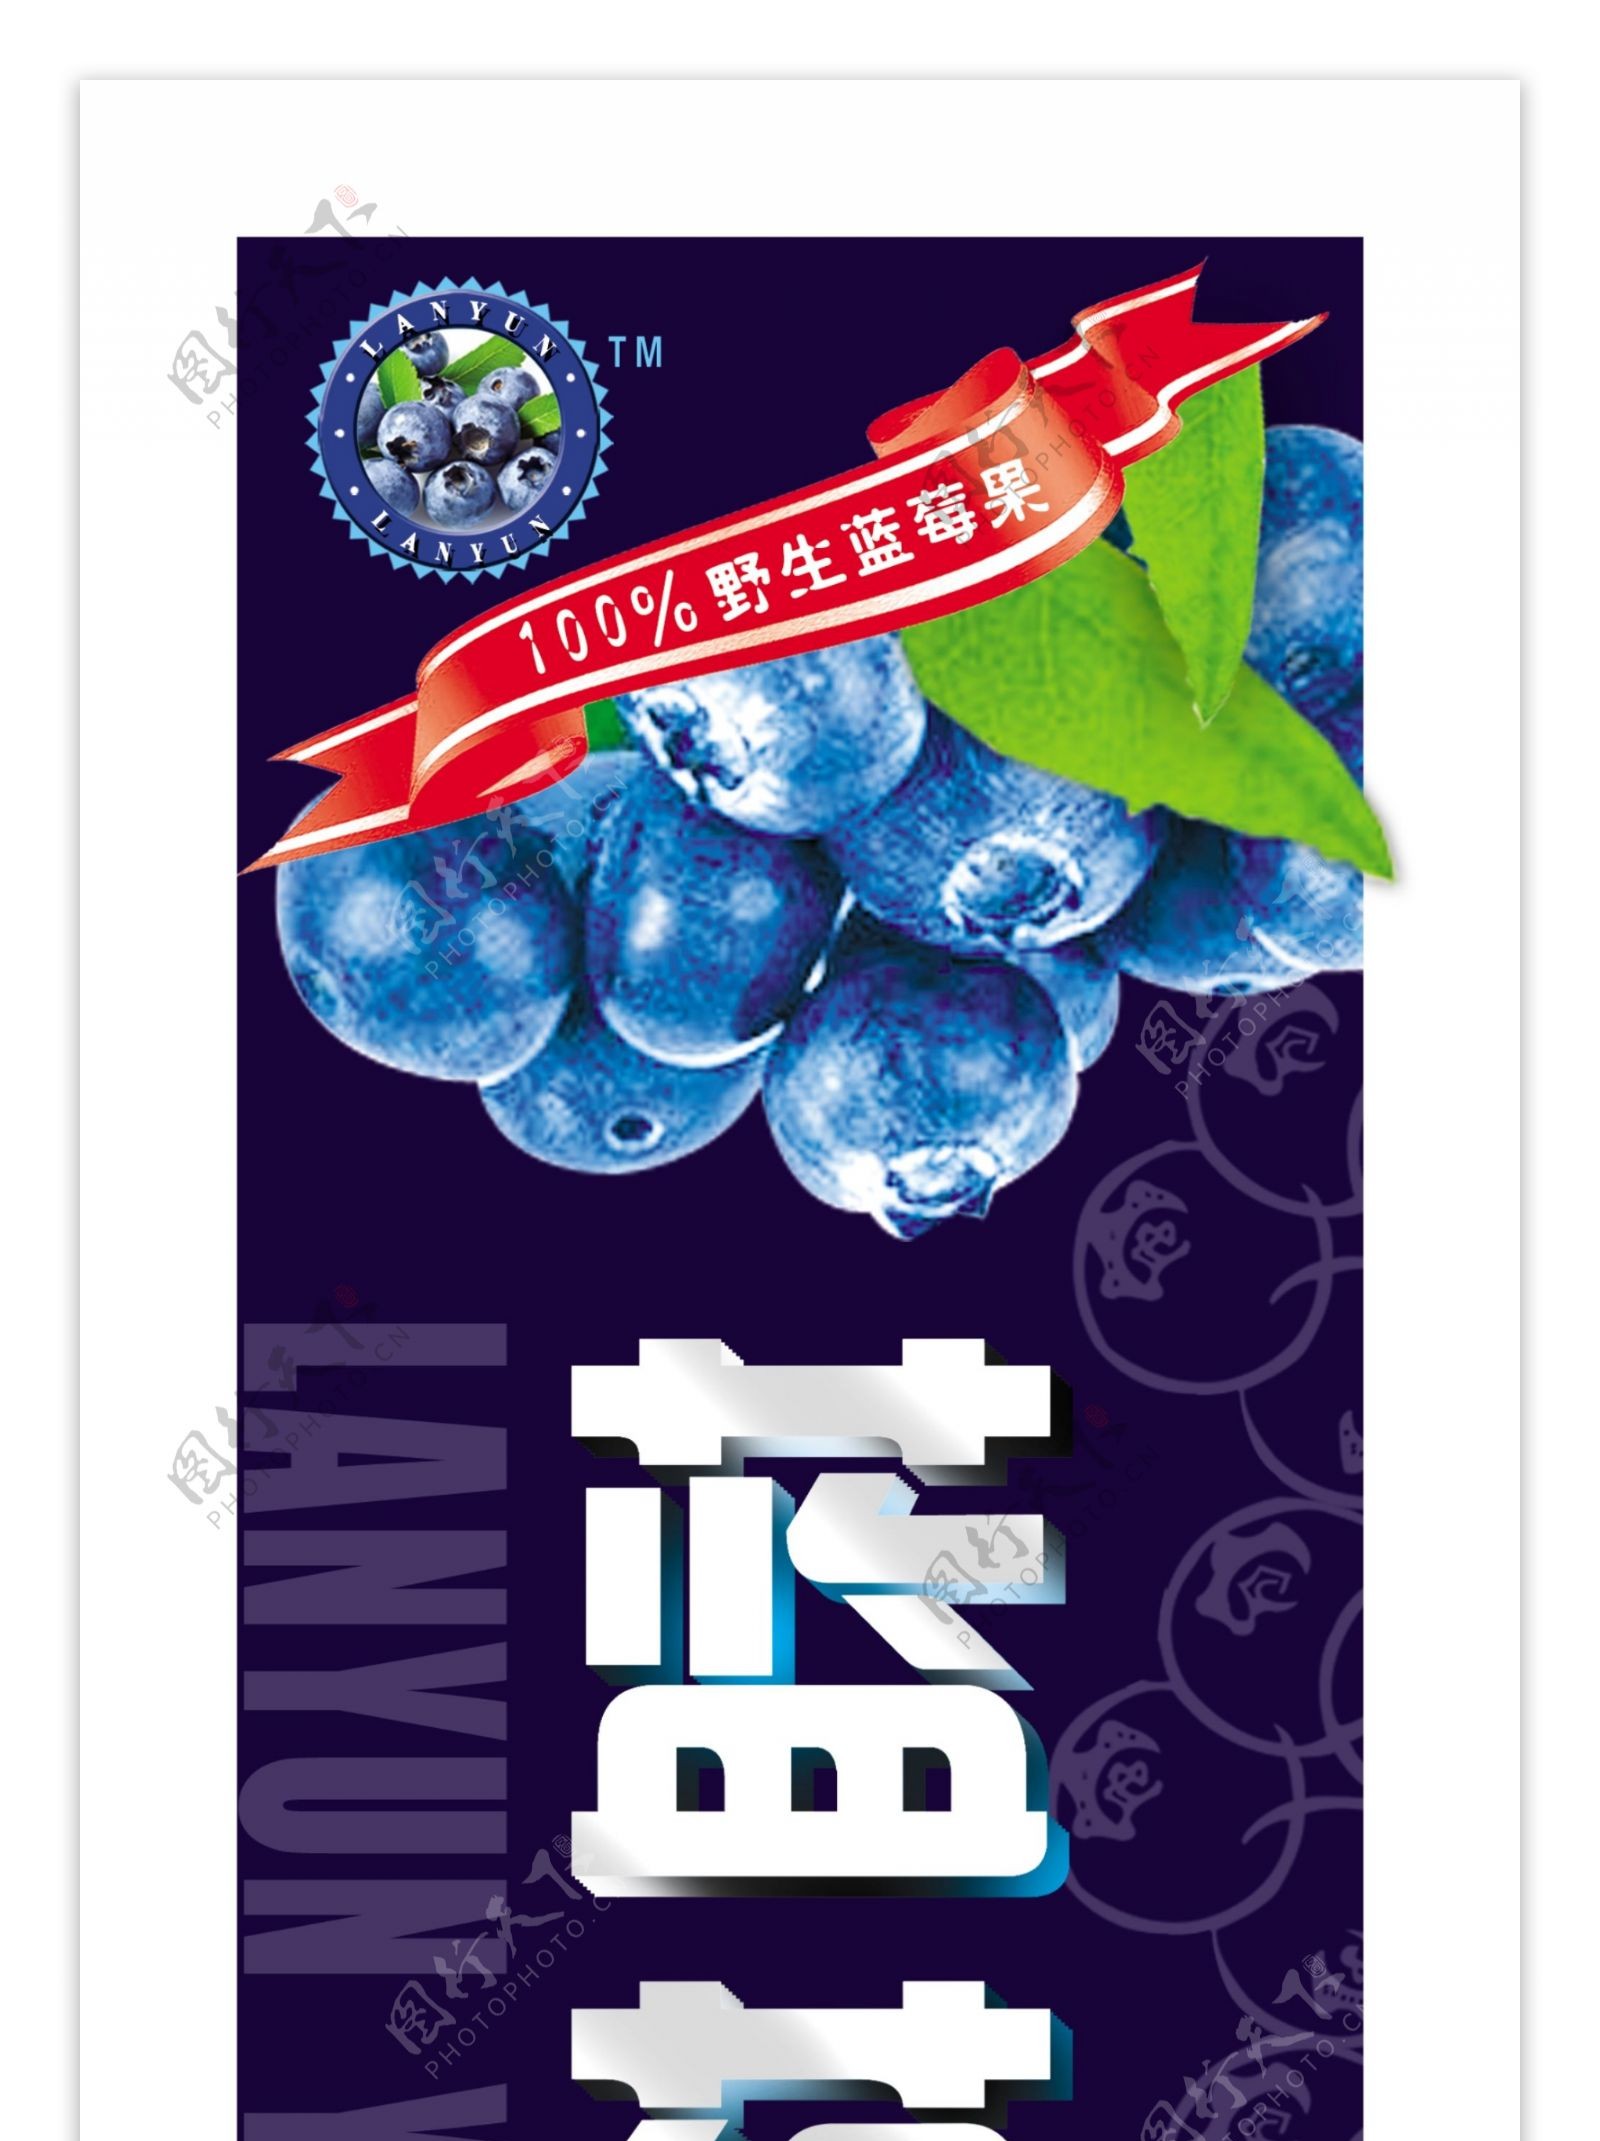 蓝莓标设计图片